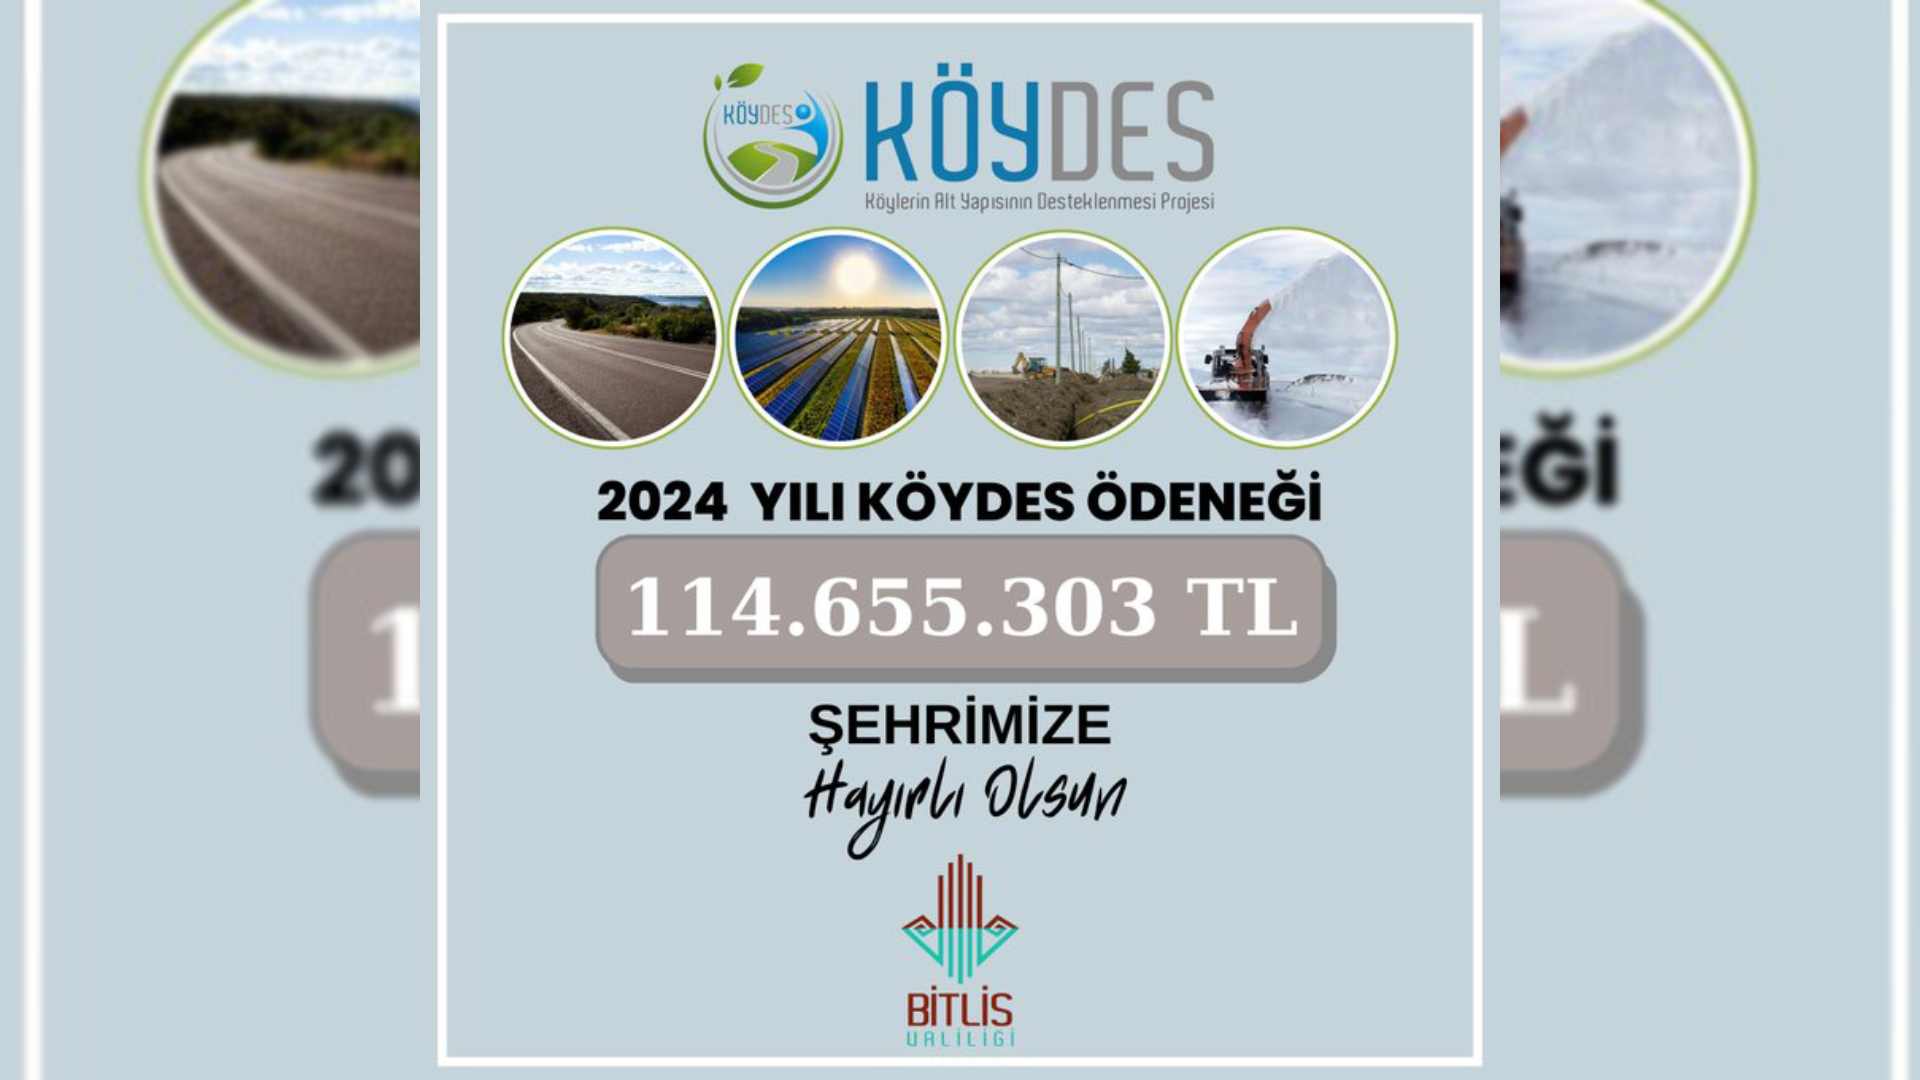 Bitlis’te 2024 Köydes Ödeneği İçin Rakam Açıklandı